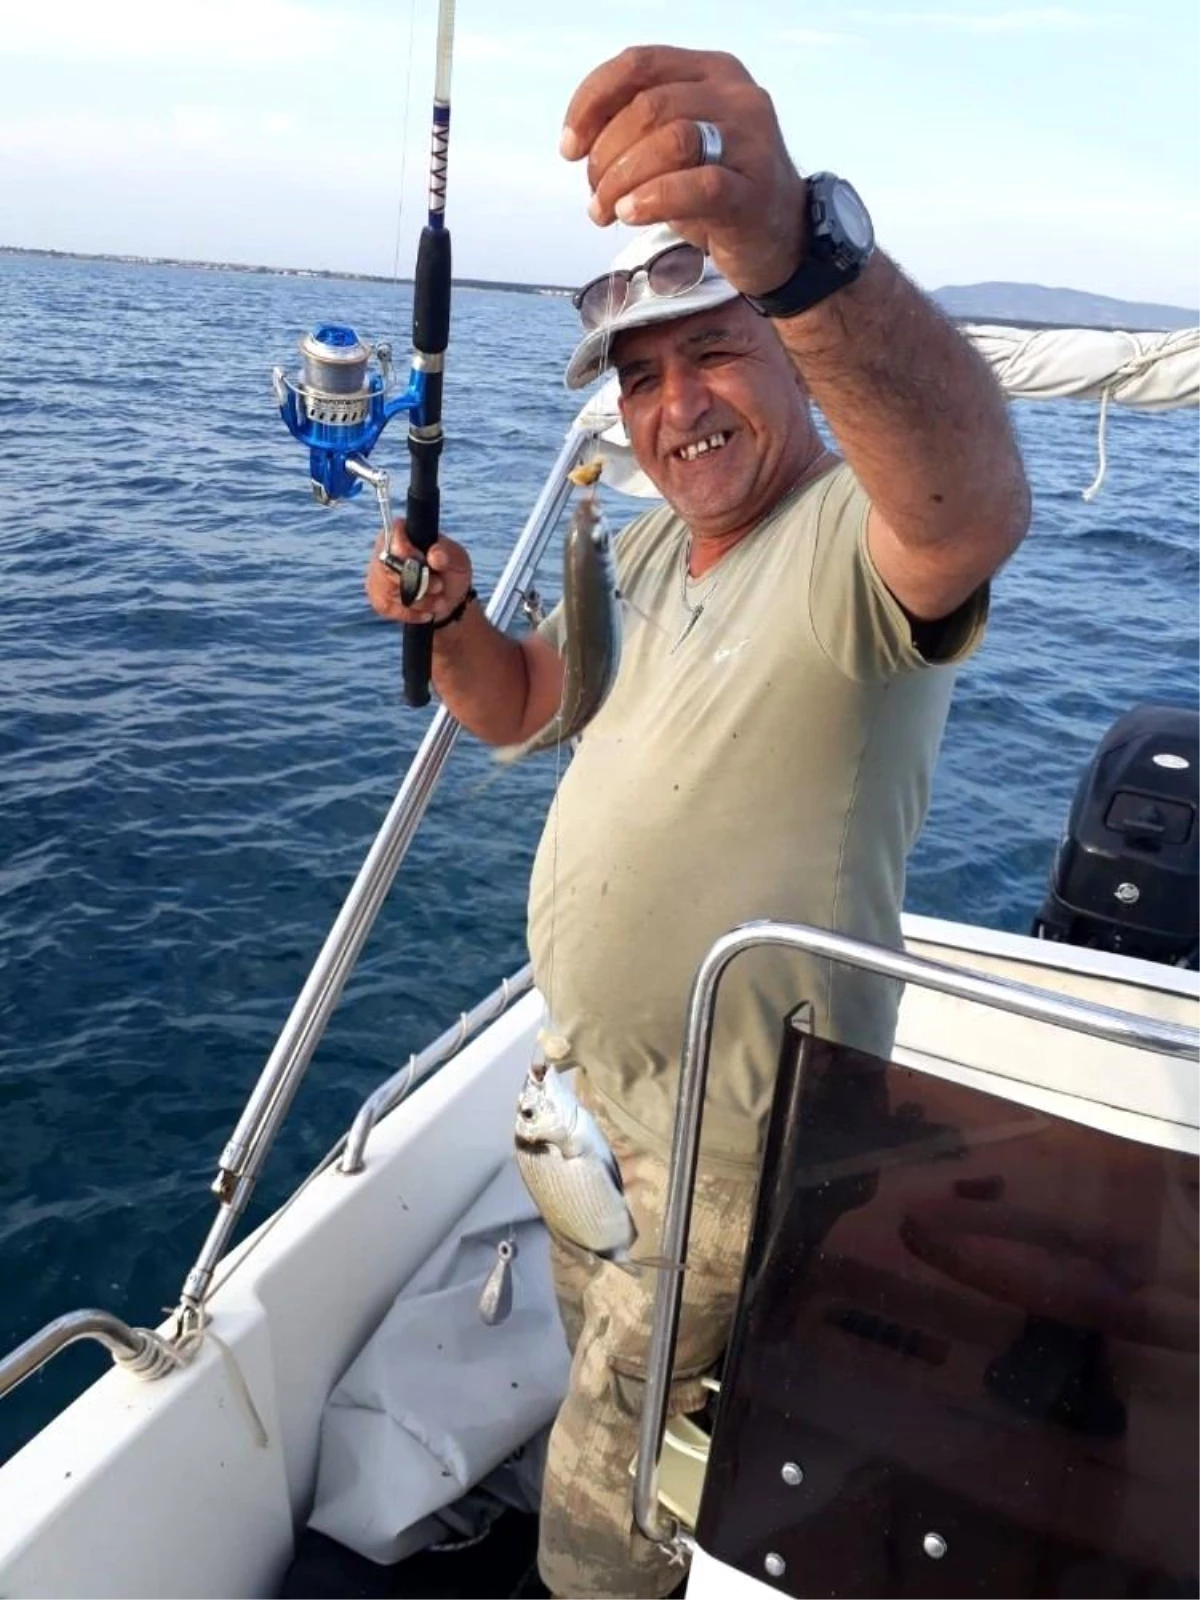 Batan teknede kaybolan balıkçılın cesedi Limni sahilinde bulundu